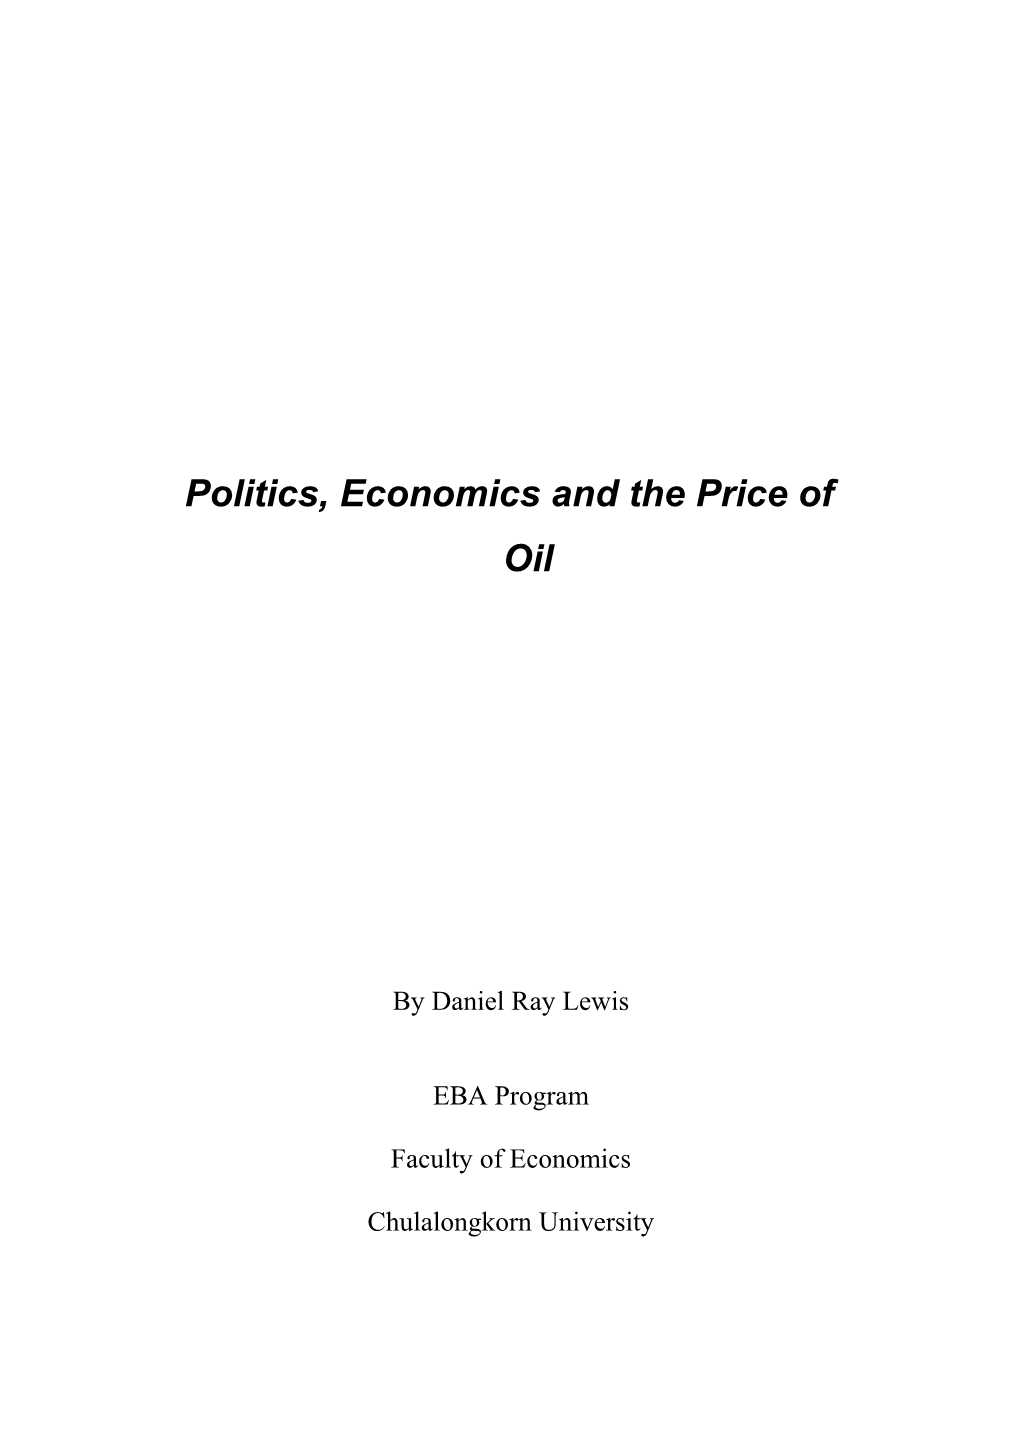 Politics, Economics and the Price of Oil